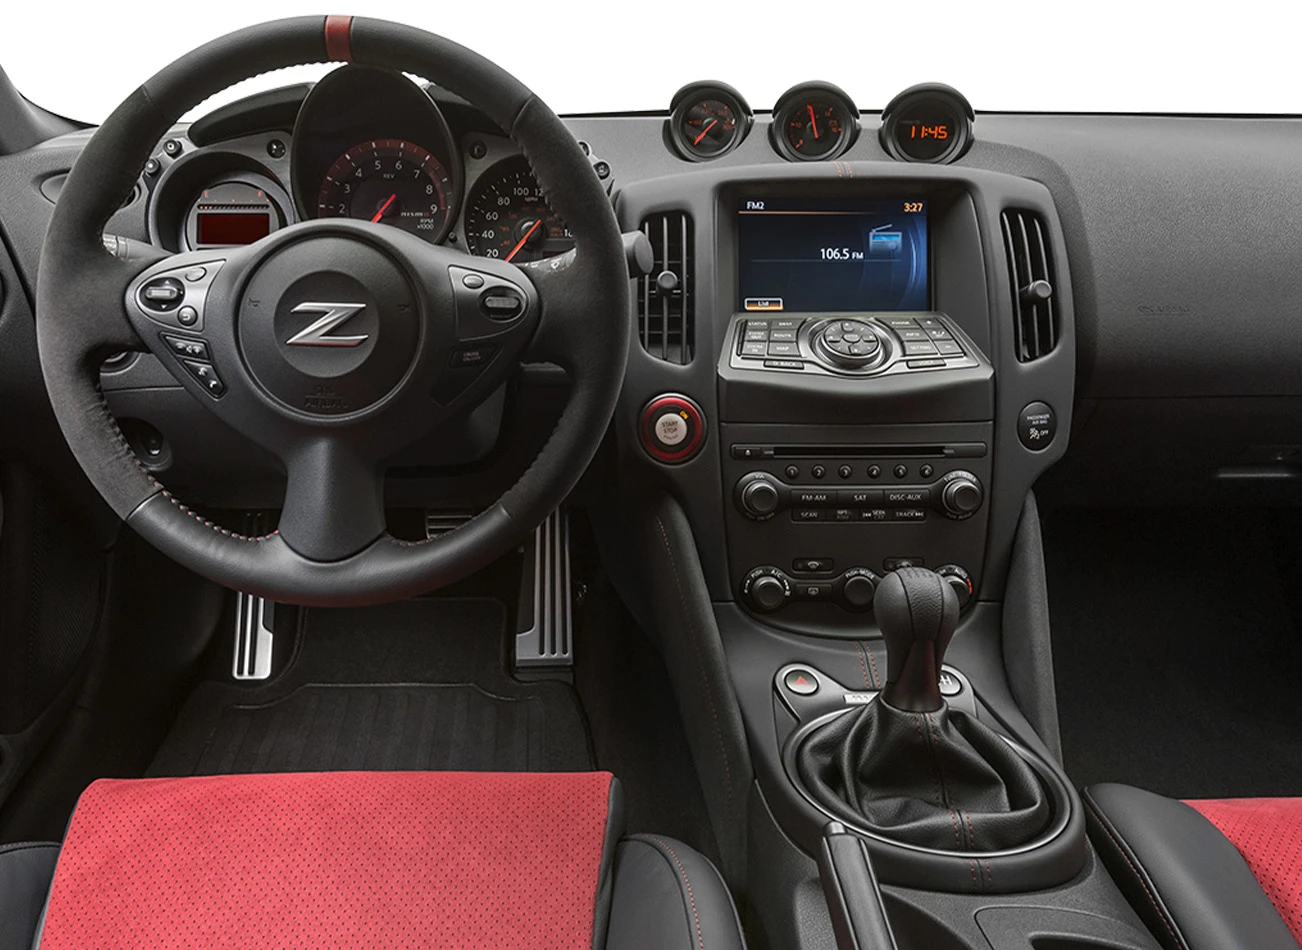  2020 Nissan 370Z: Dashboard | CarMax